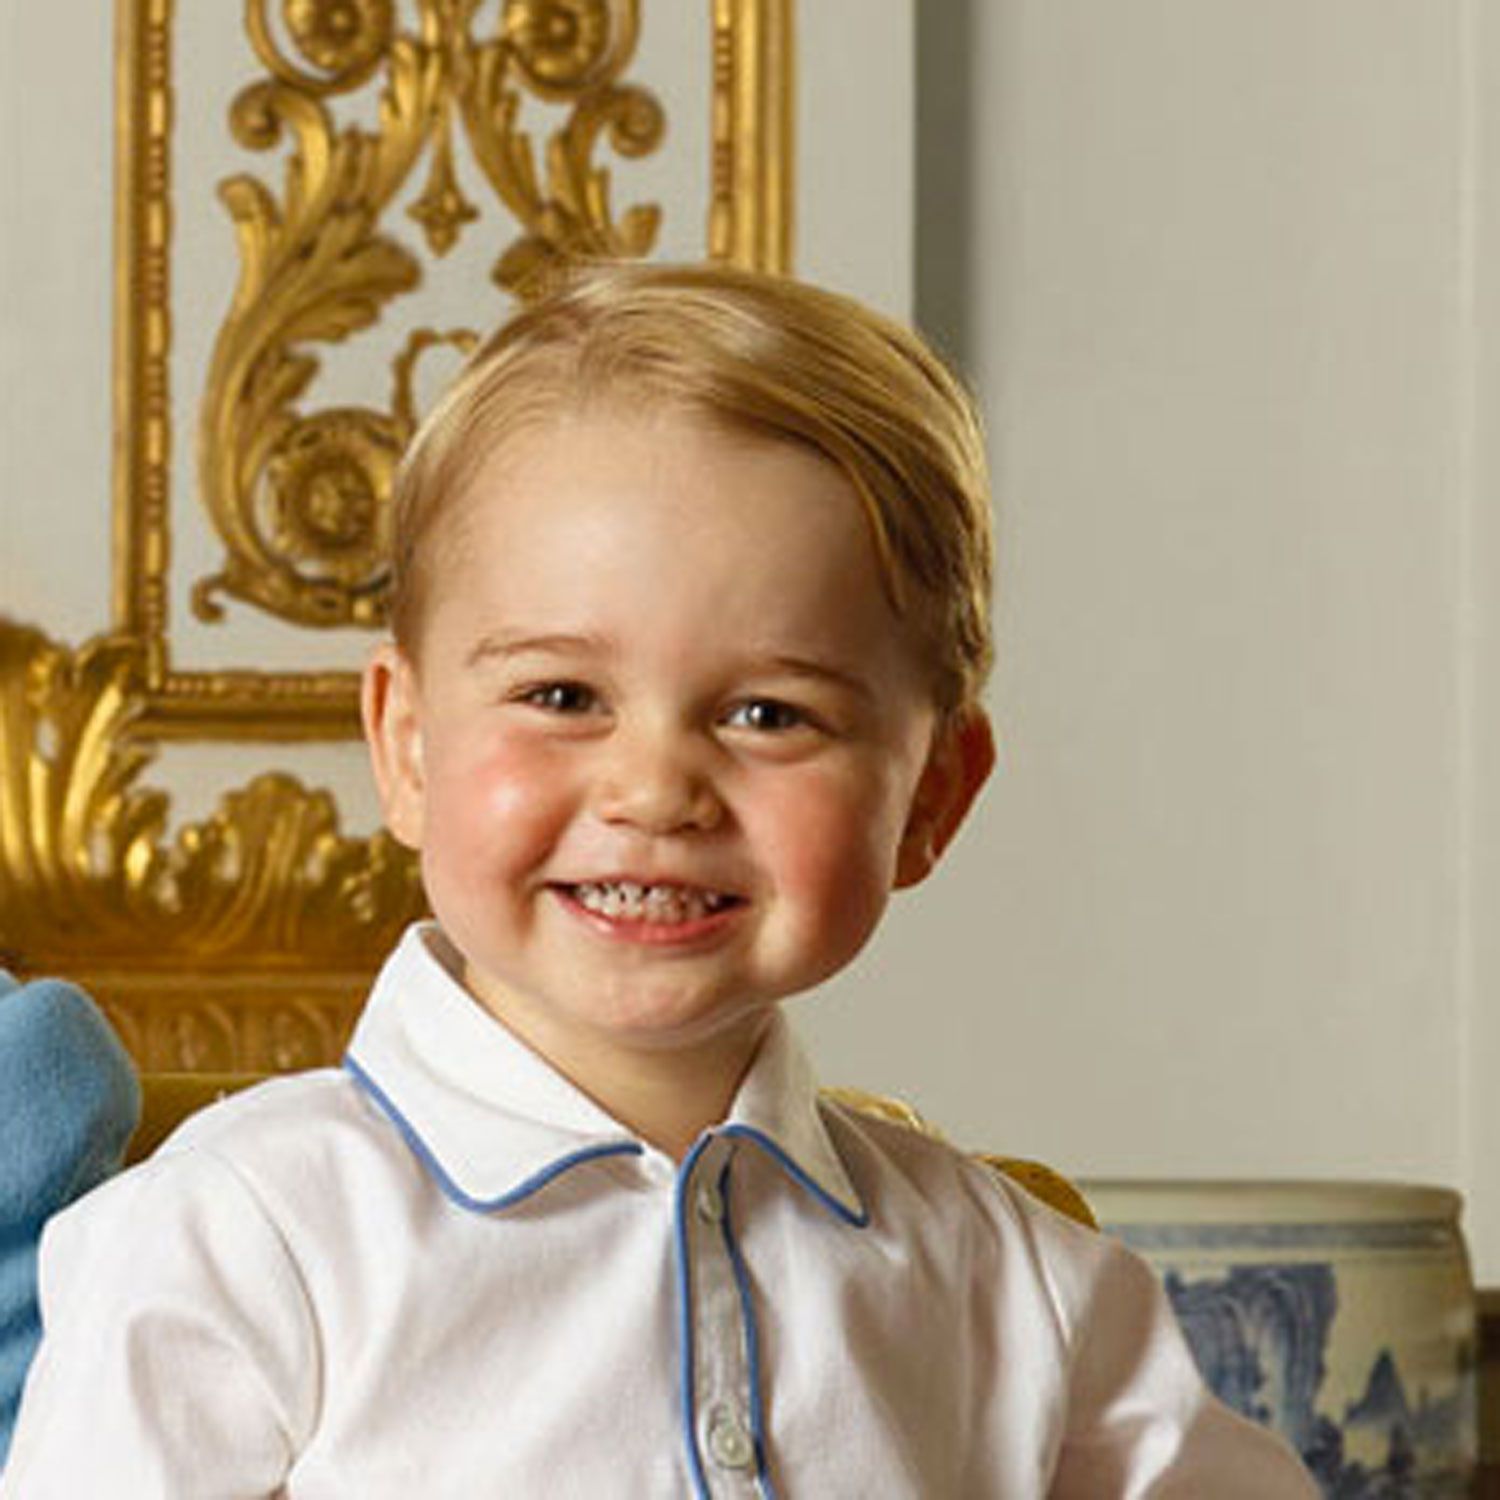 Résultat de recherche d'images pour "georges prince anglais"